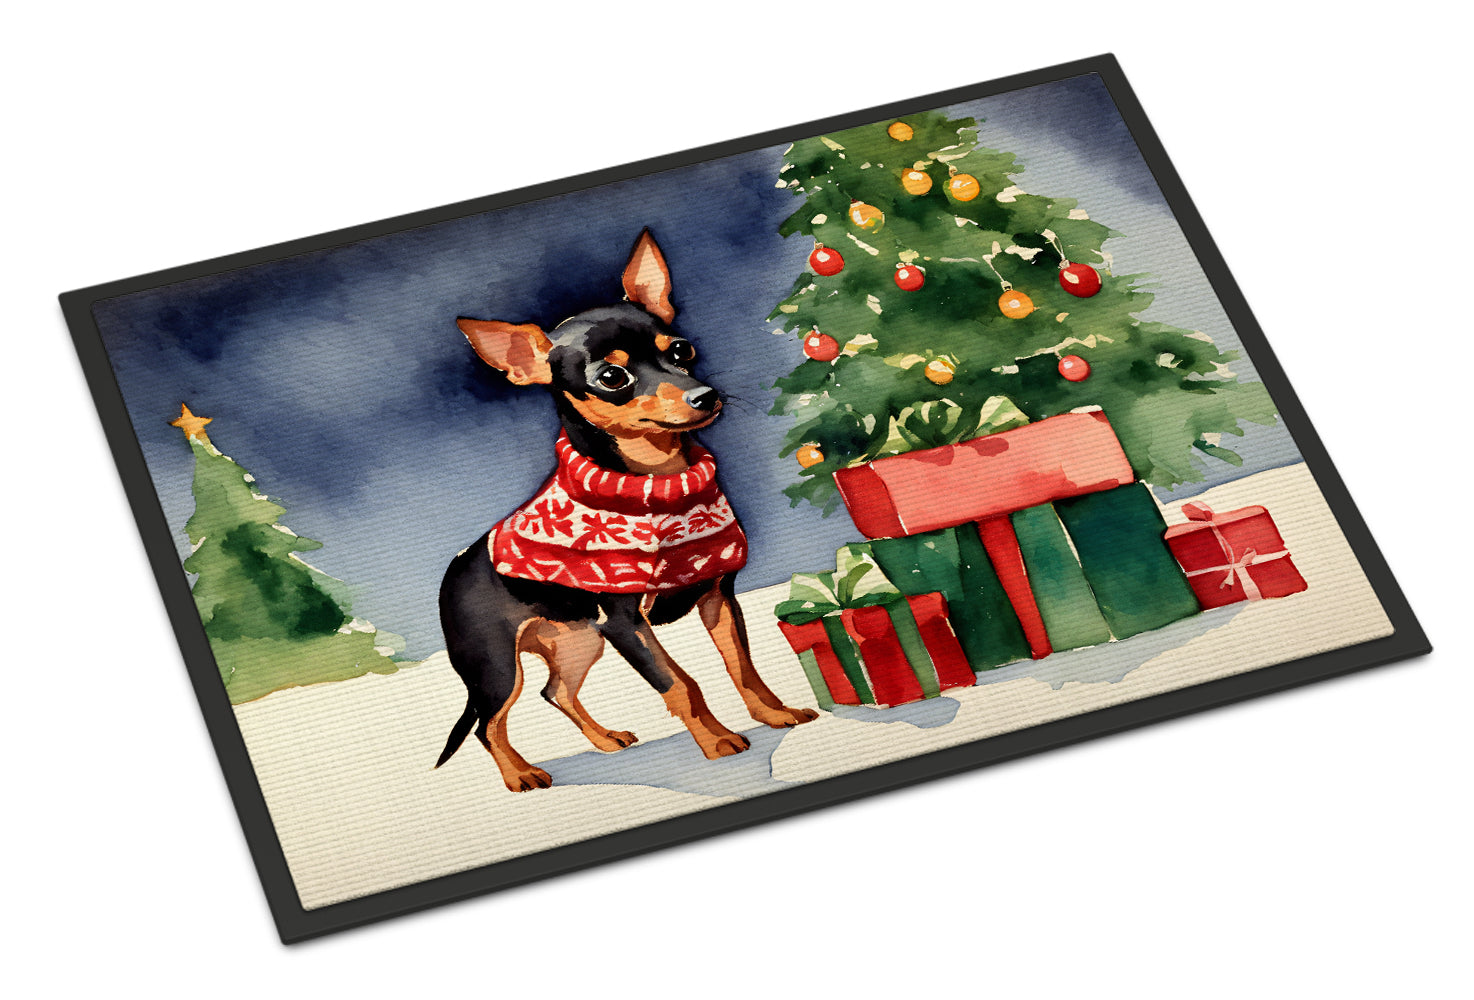 Buy this Miniature Pinscher Cozy Christmas Doormat